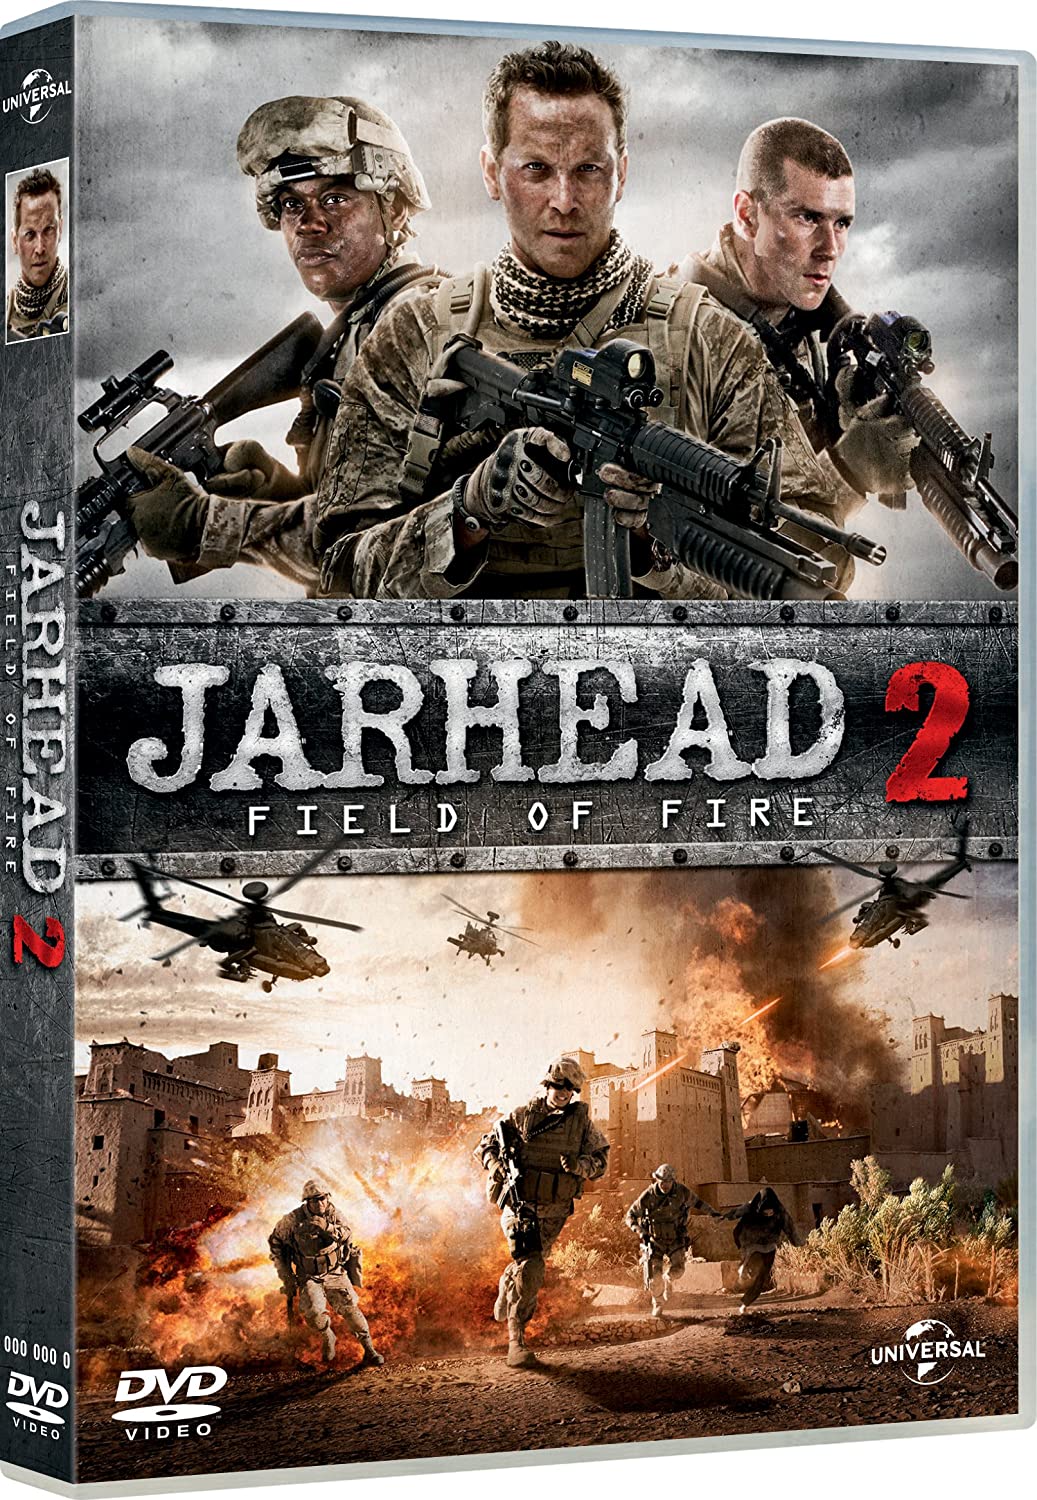 Jarhead 2: Field of Fire (DVD)